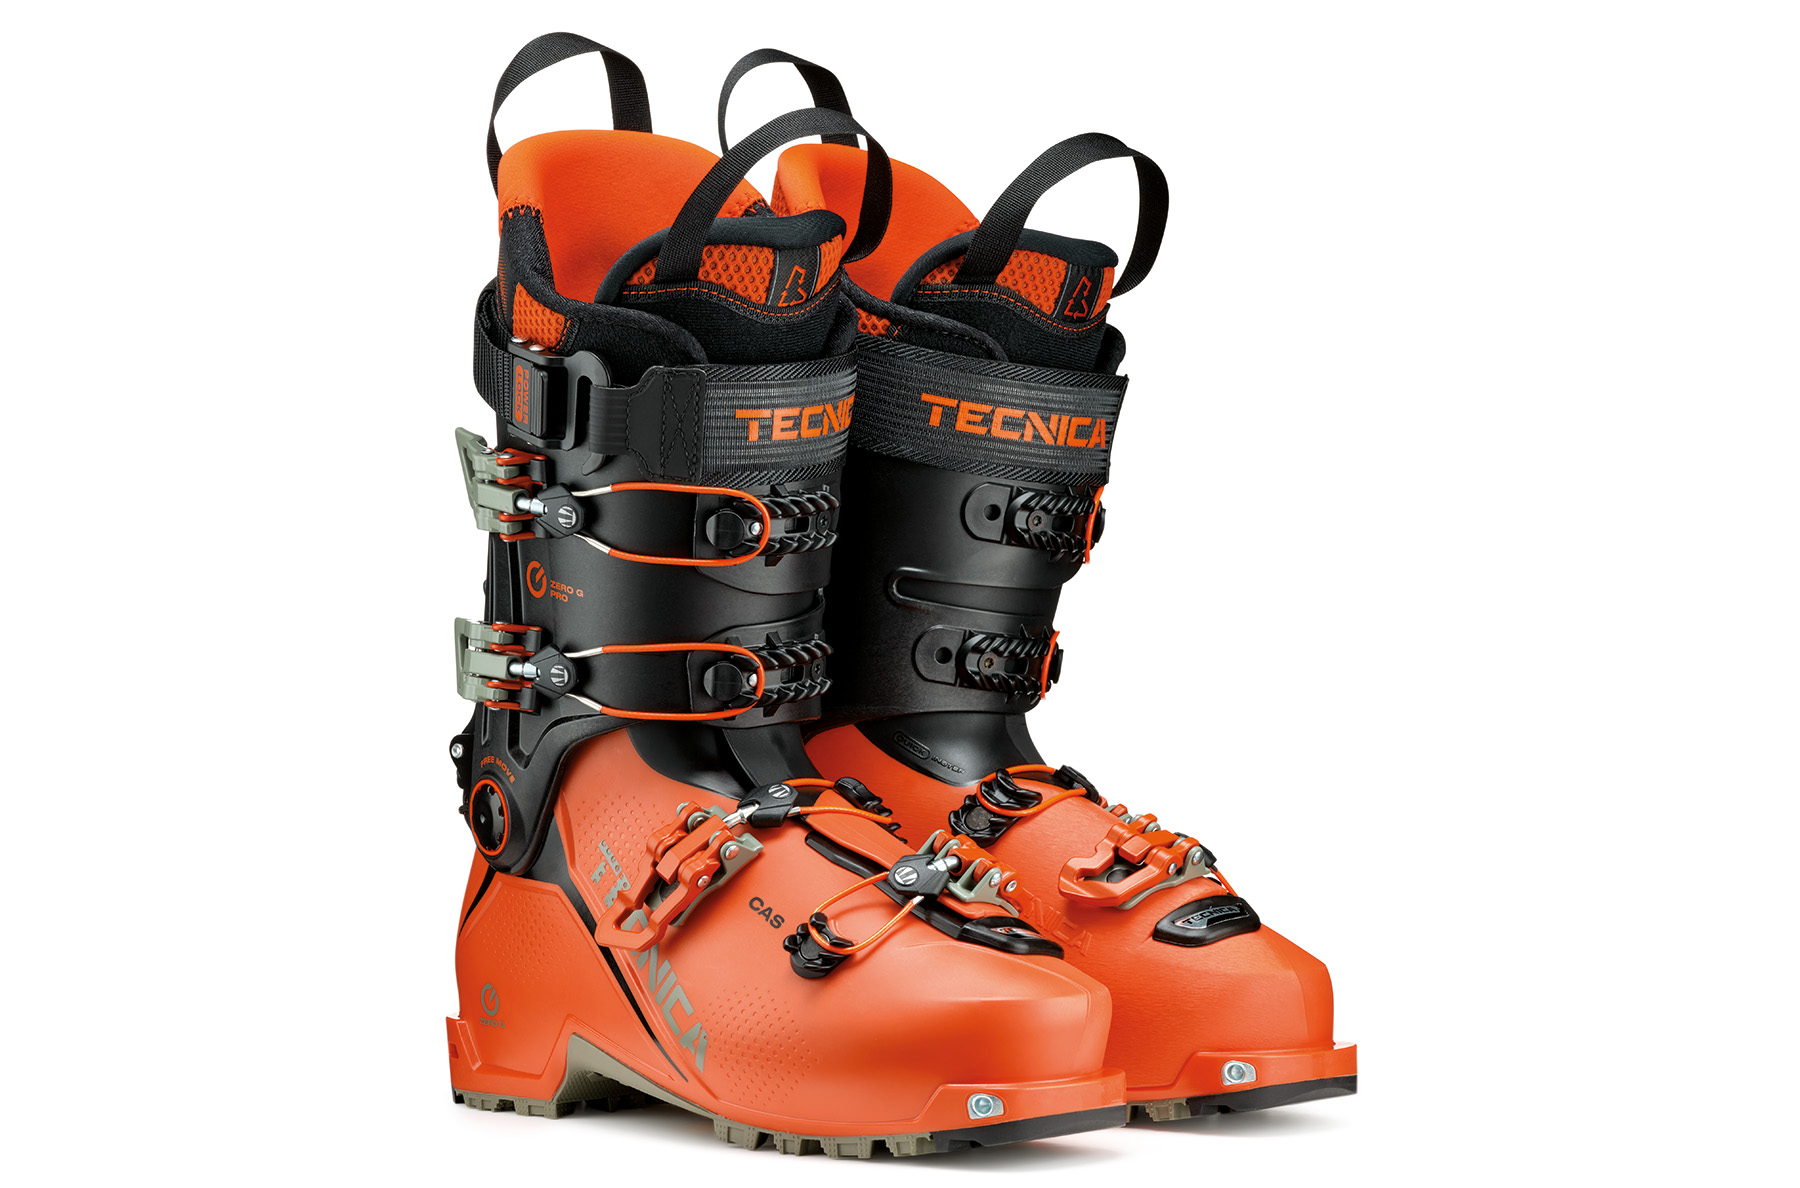 Tecnica Announces New 24/25 Zero G Tour Boots | Blister